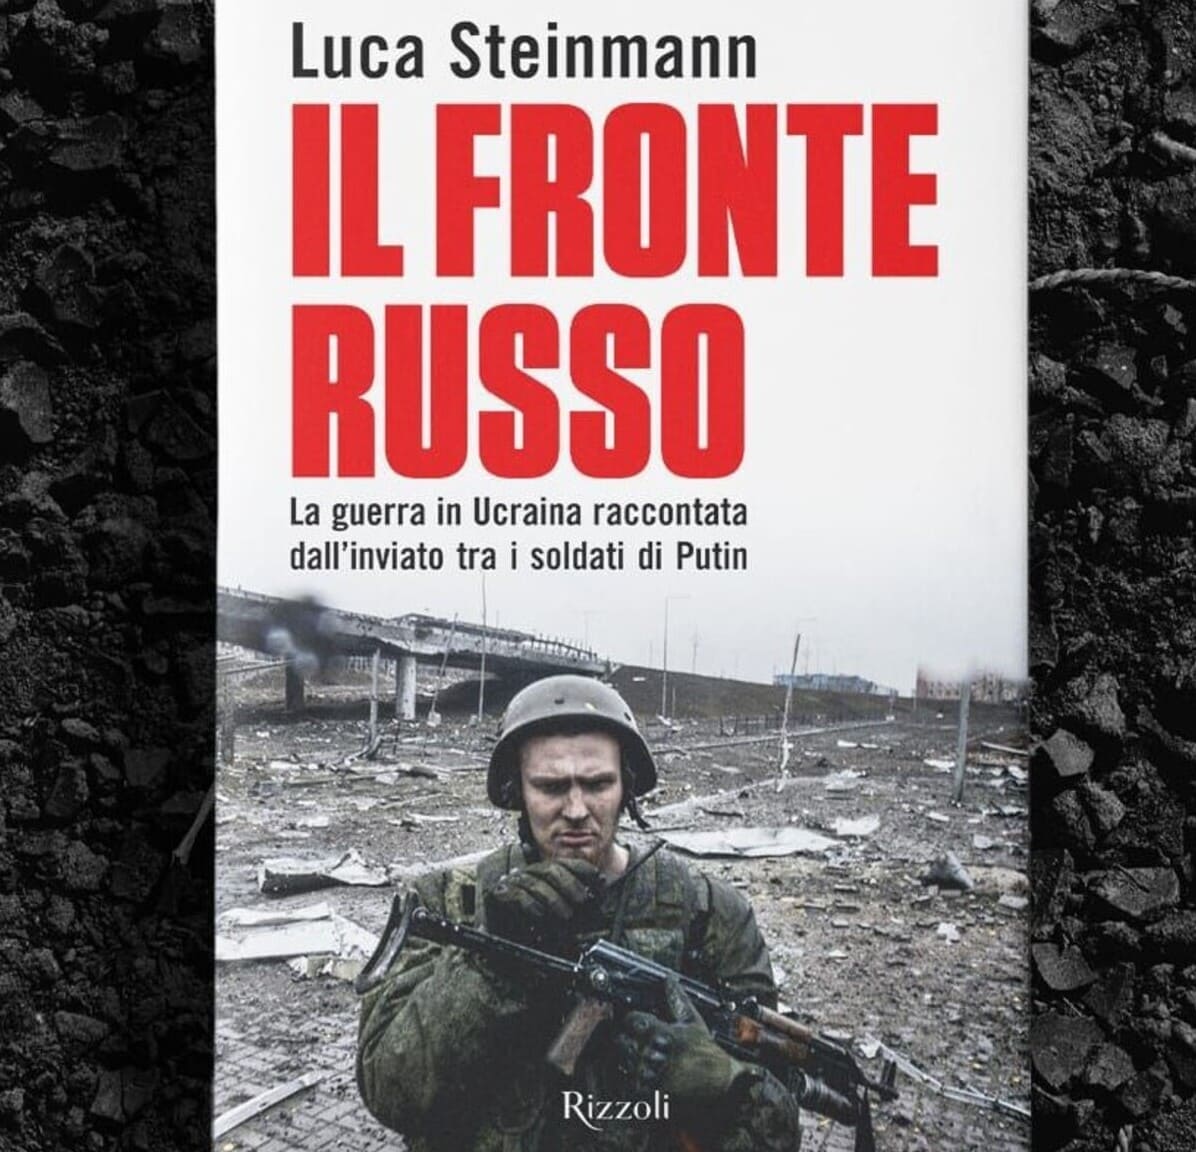 Un anno intero in Ucraina: intervista a Luca Steinmann, uno dei pochissimi giornalisti occidentali che racconta sul campo il lato russo del fronte